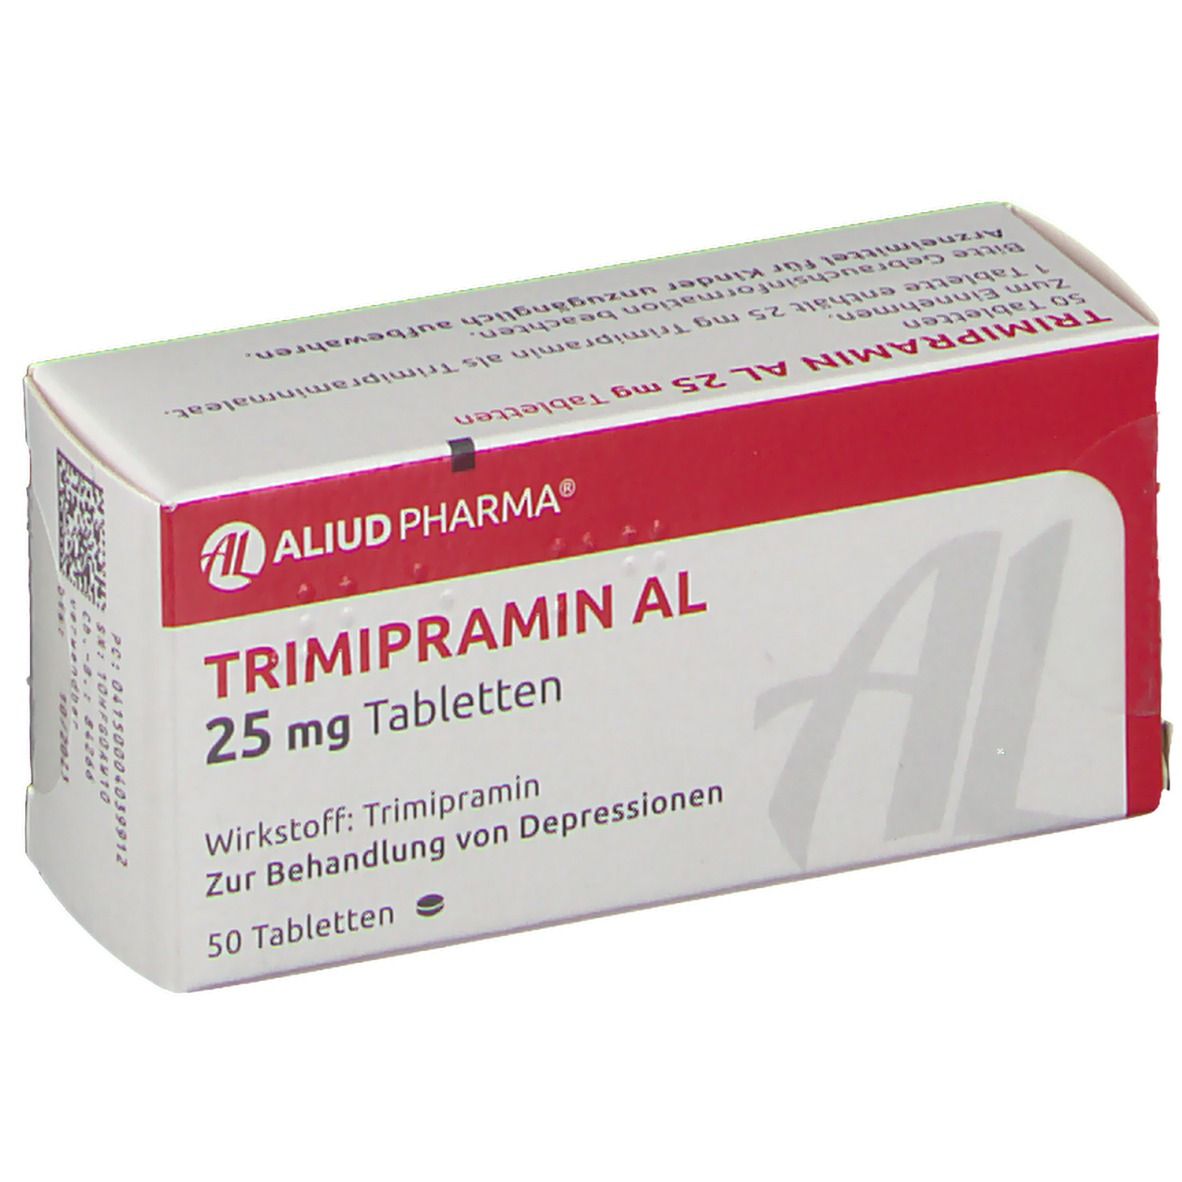 Trimipramin AL 25 mg